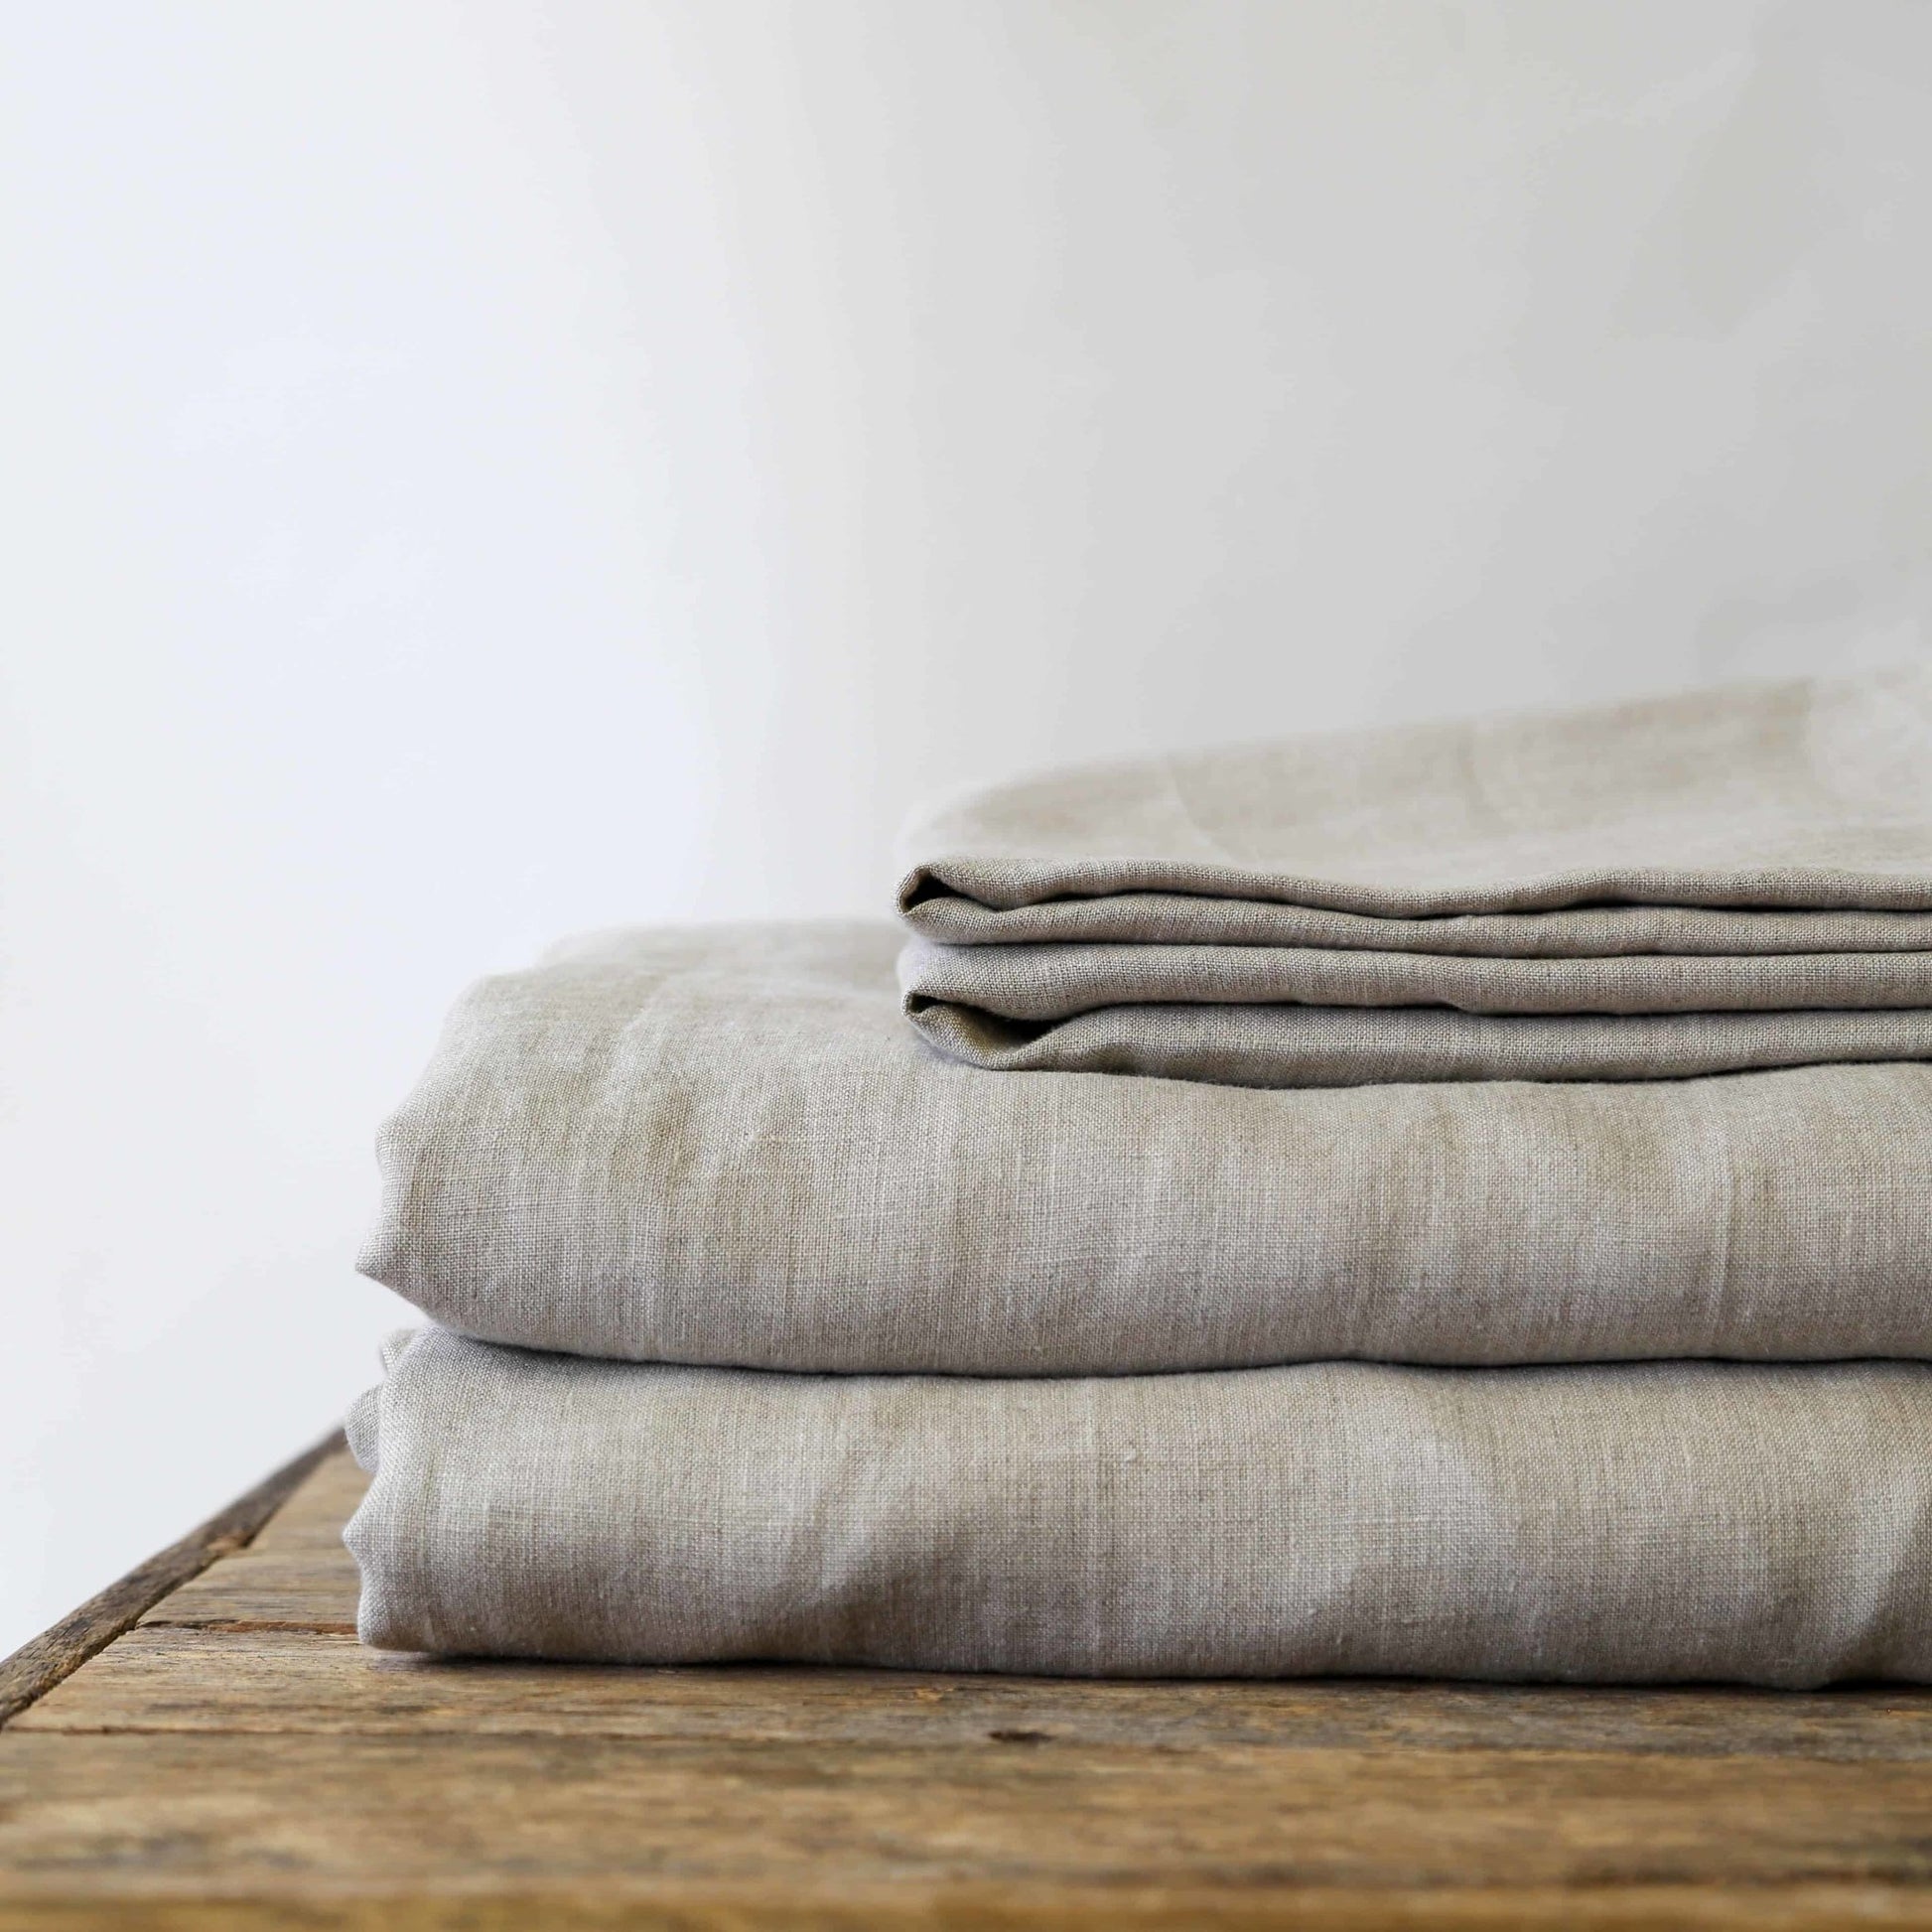 100% Pure Hemp Linen Quilt Set - Margaret River Hemp Co